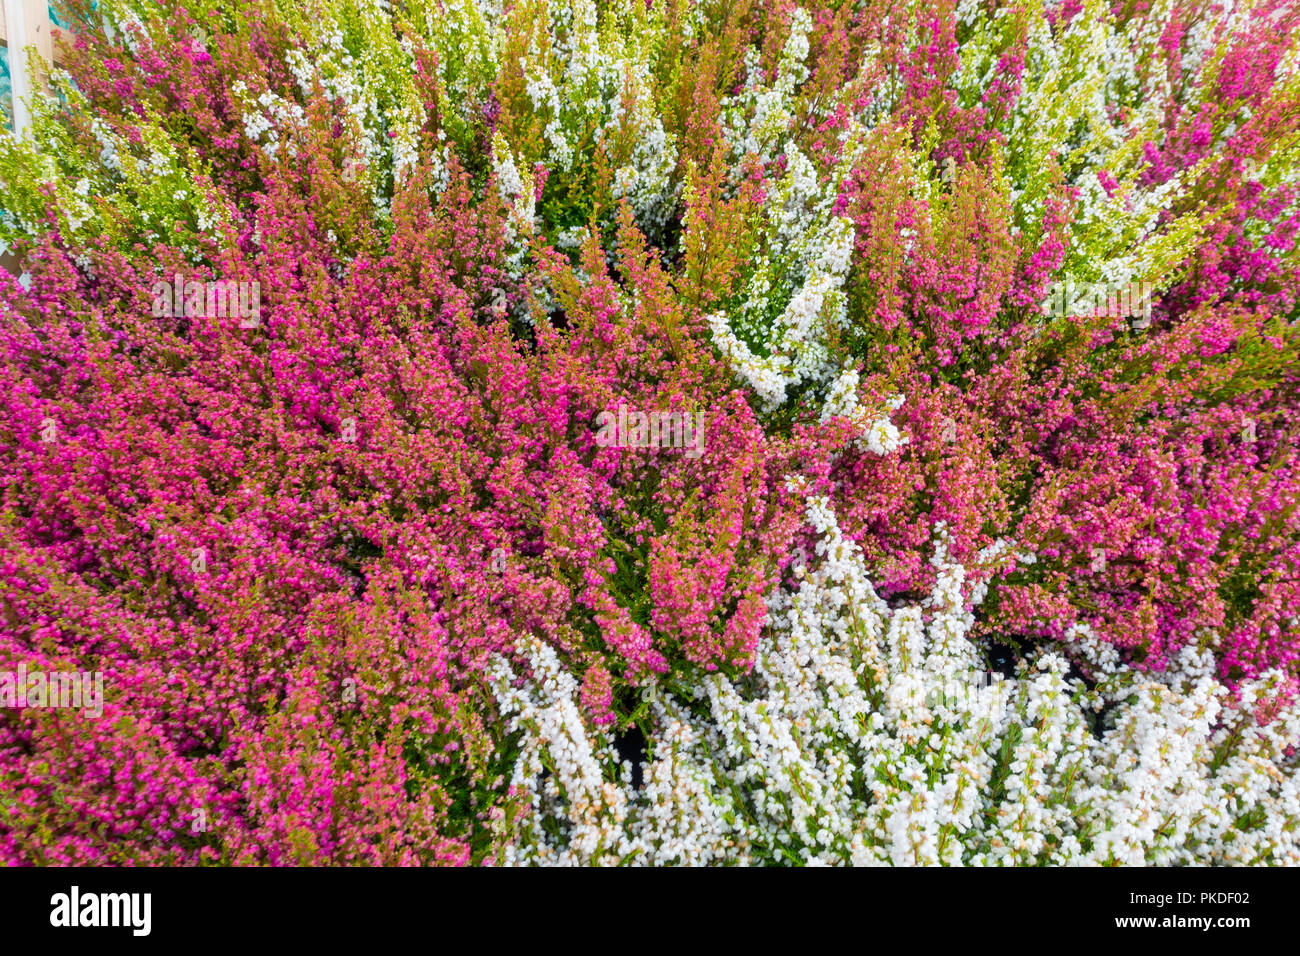 Massa di viola e bianco heather piante senza etichette in un garden center Foto Stock